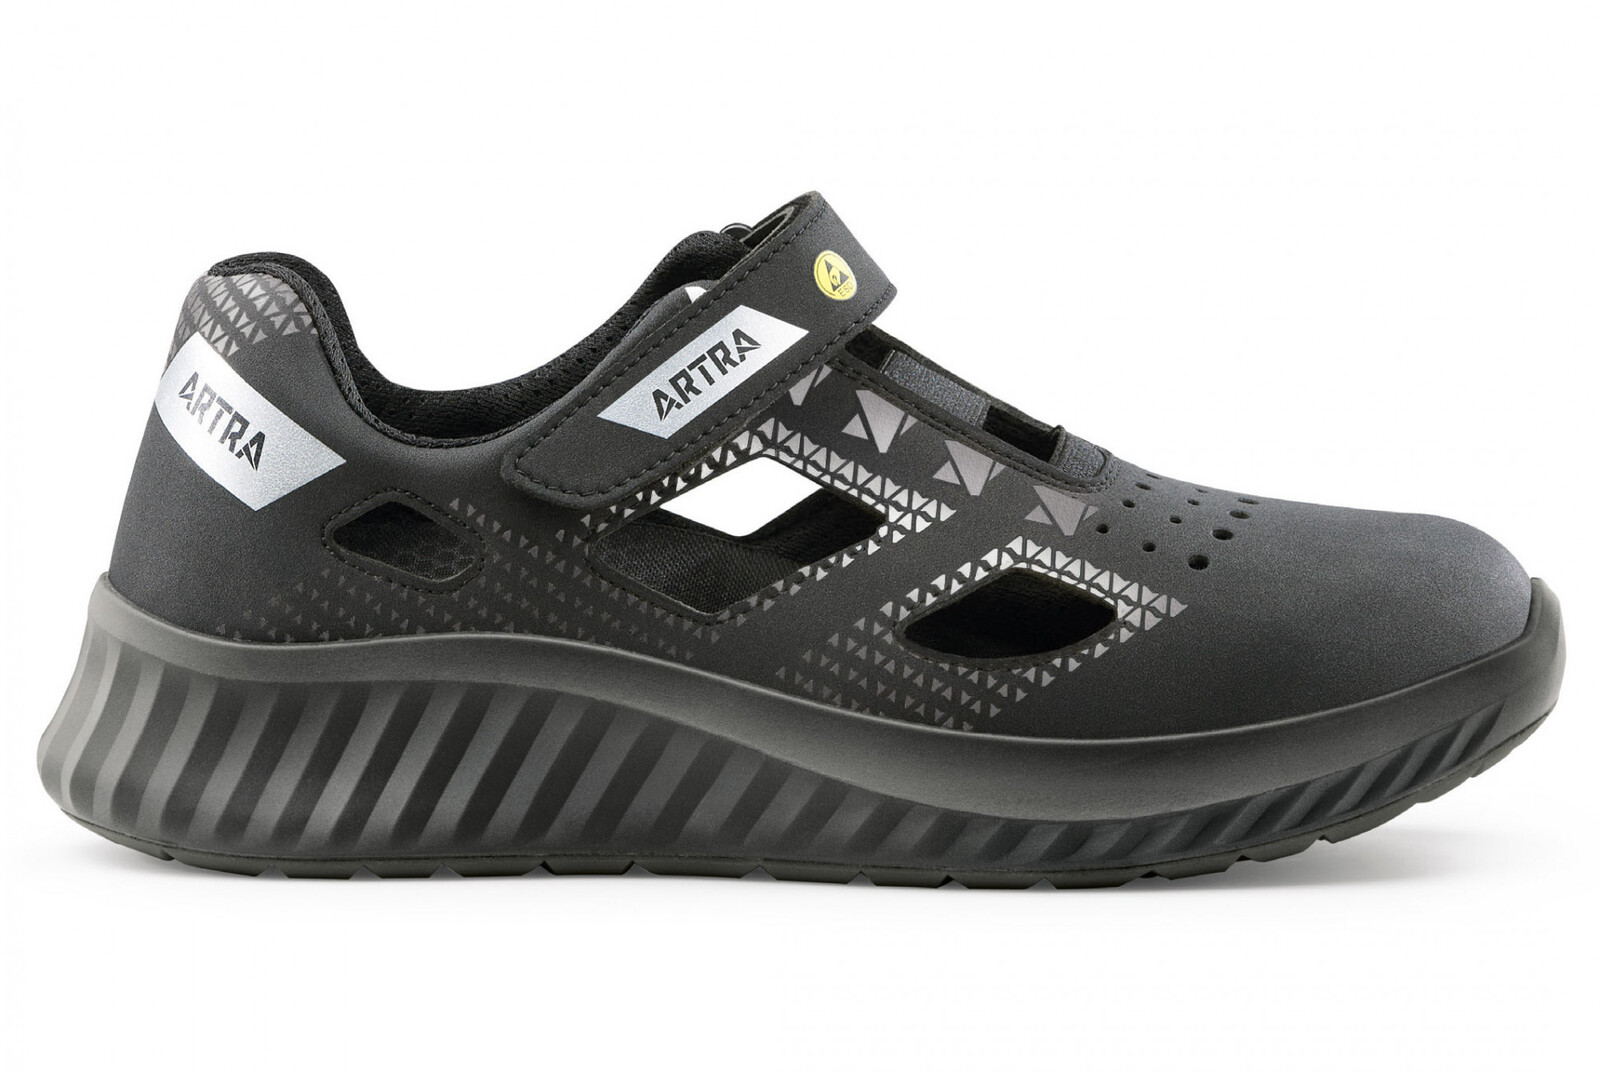 Bezpečnostné sandále Artra Arso 701 616560 S1P SRC ESD - veľkosť: 43, farba: čierna/sivá